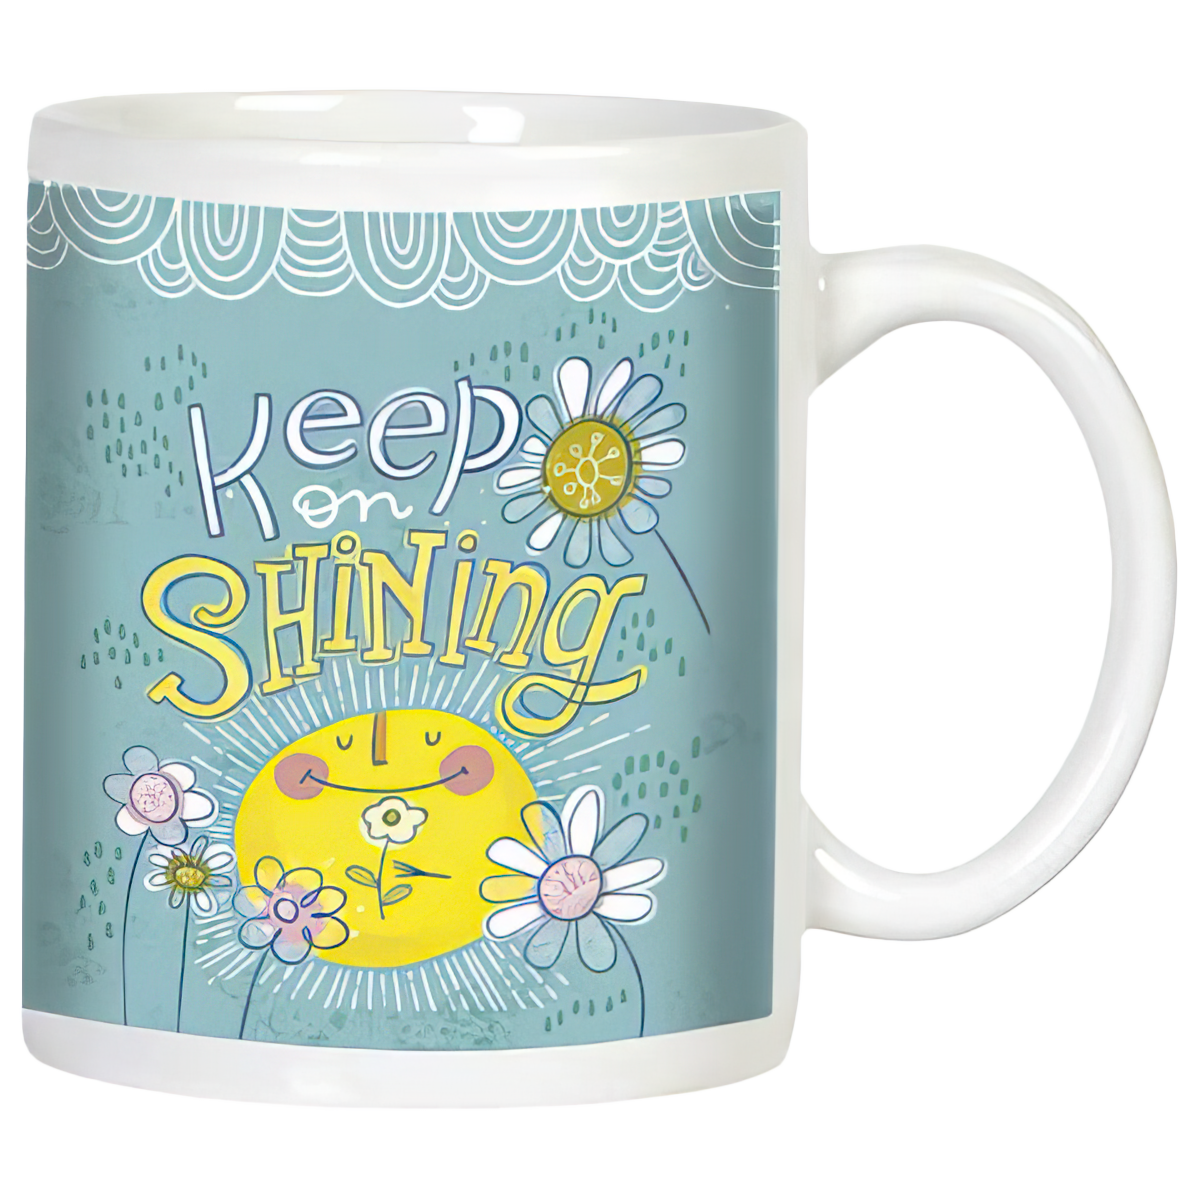 Smiling Sun and Flowers Mug